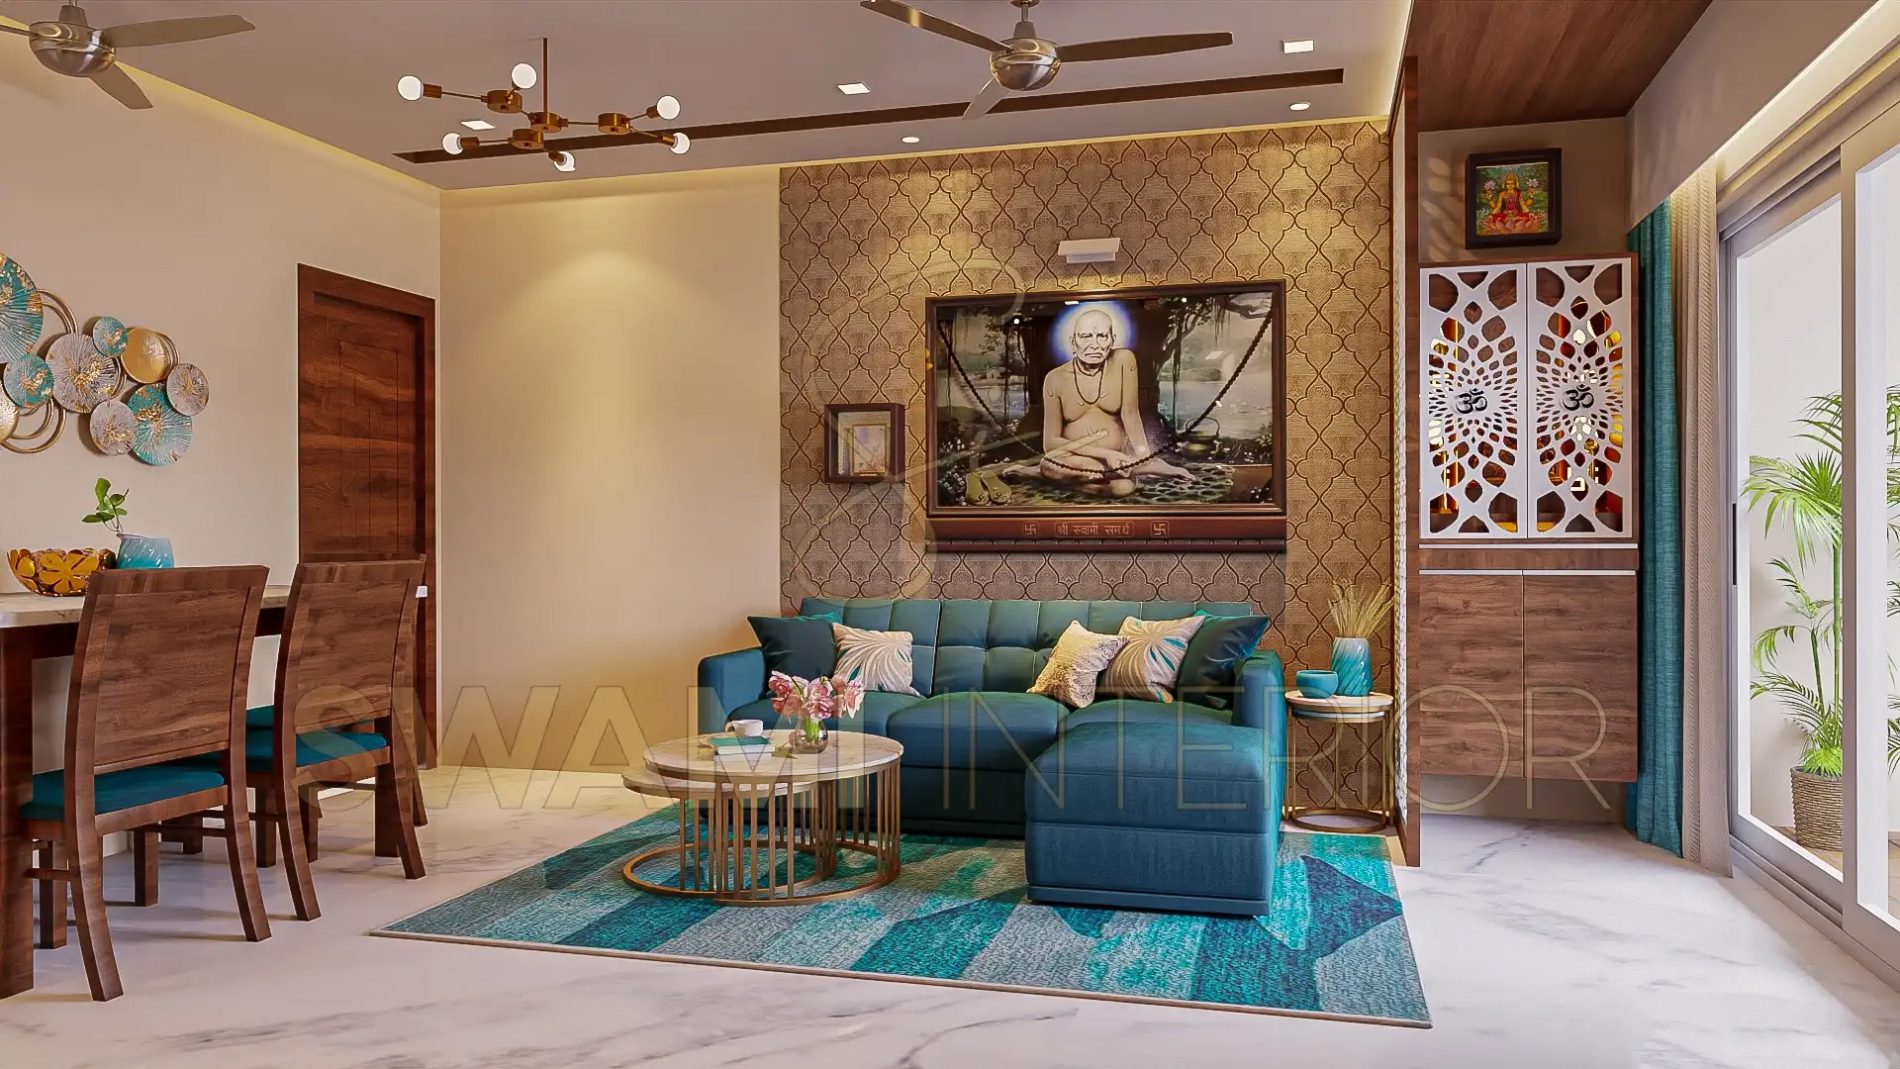 Swami Interior Design